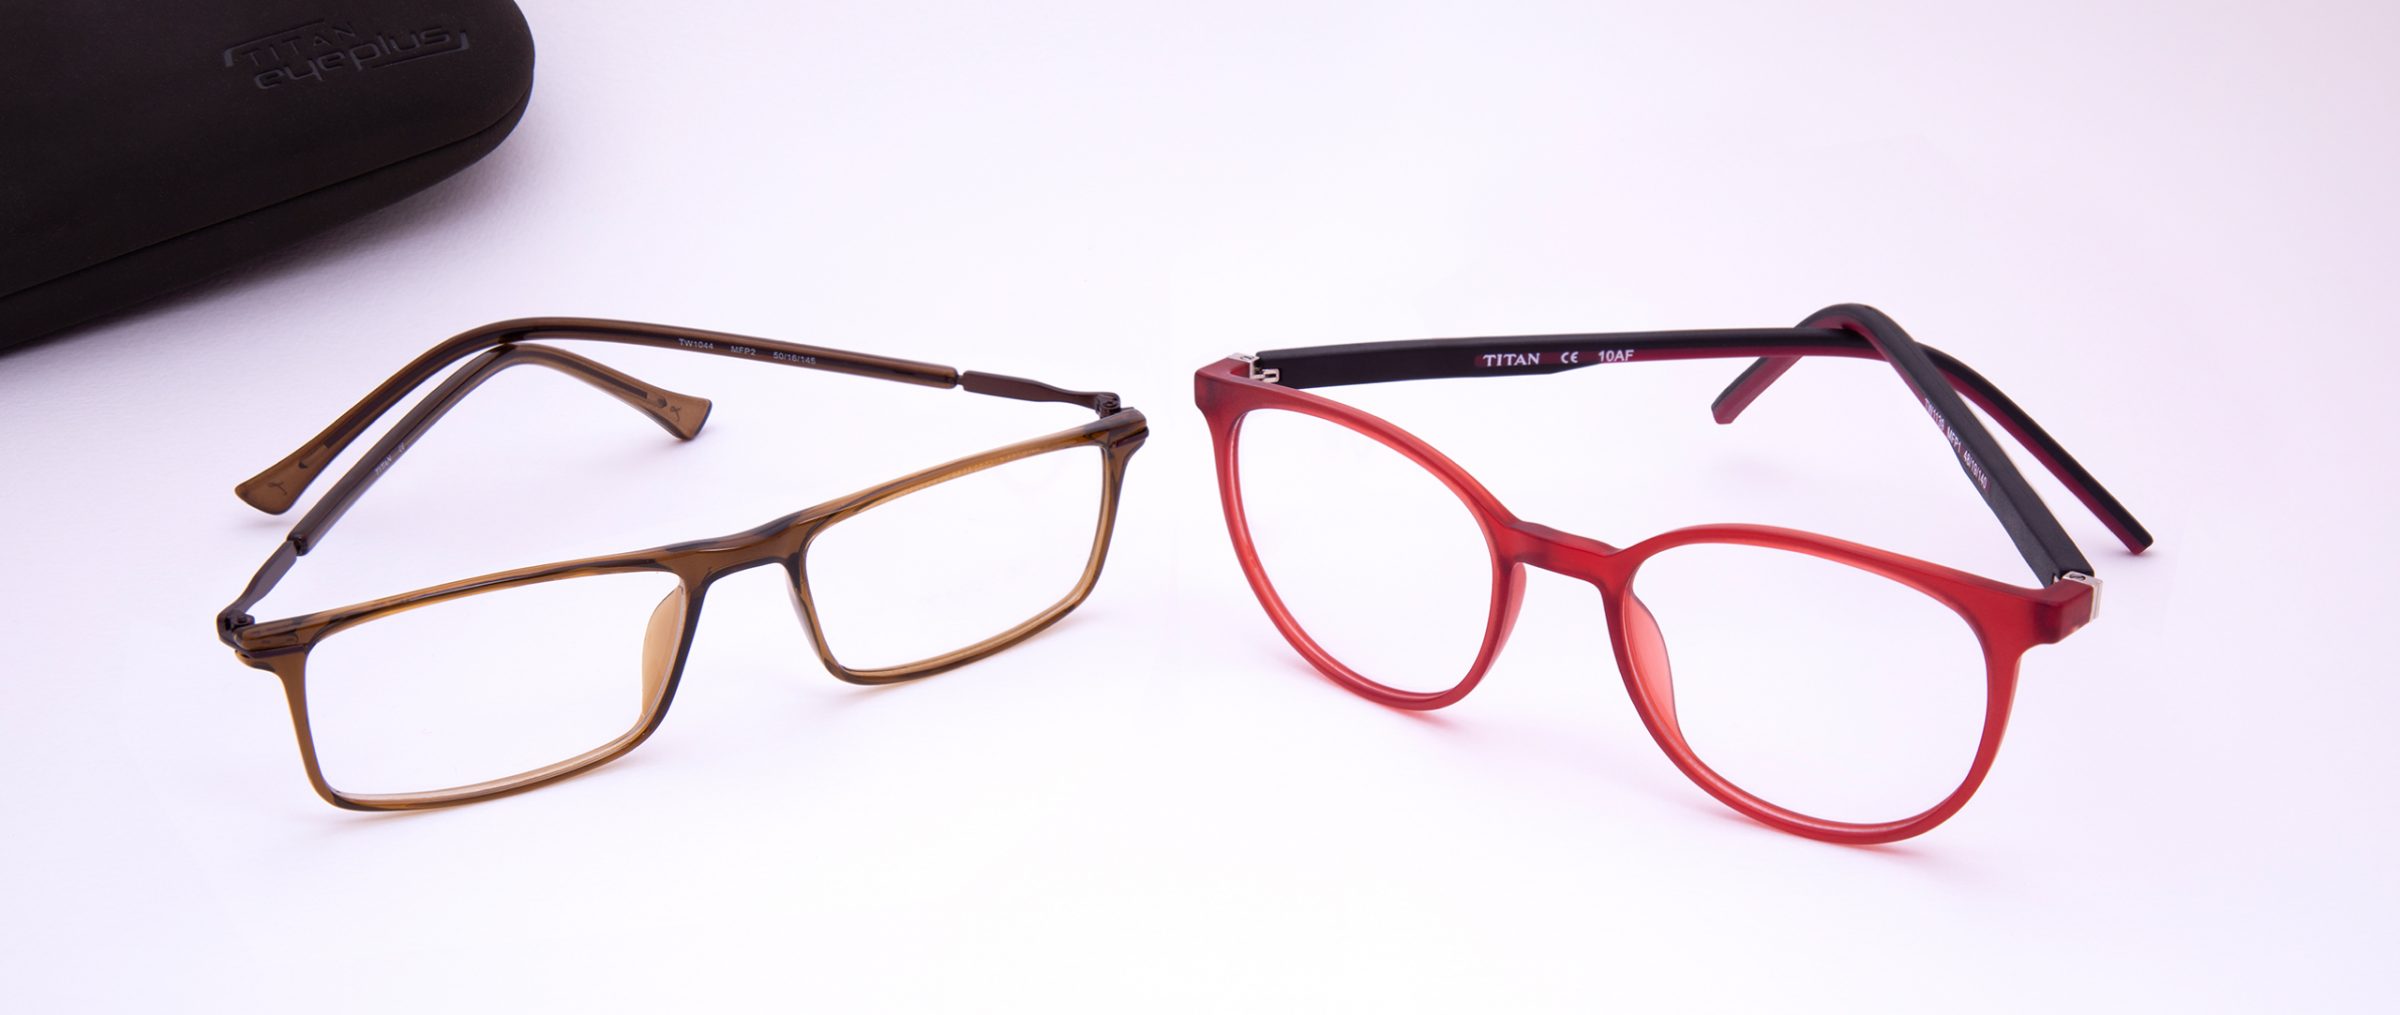 Why Is Titan Eyeplus One Of The Top Eyeglasses Brands In India Titan Eye Plus Blog